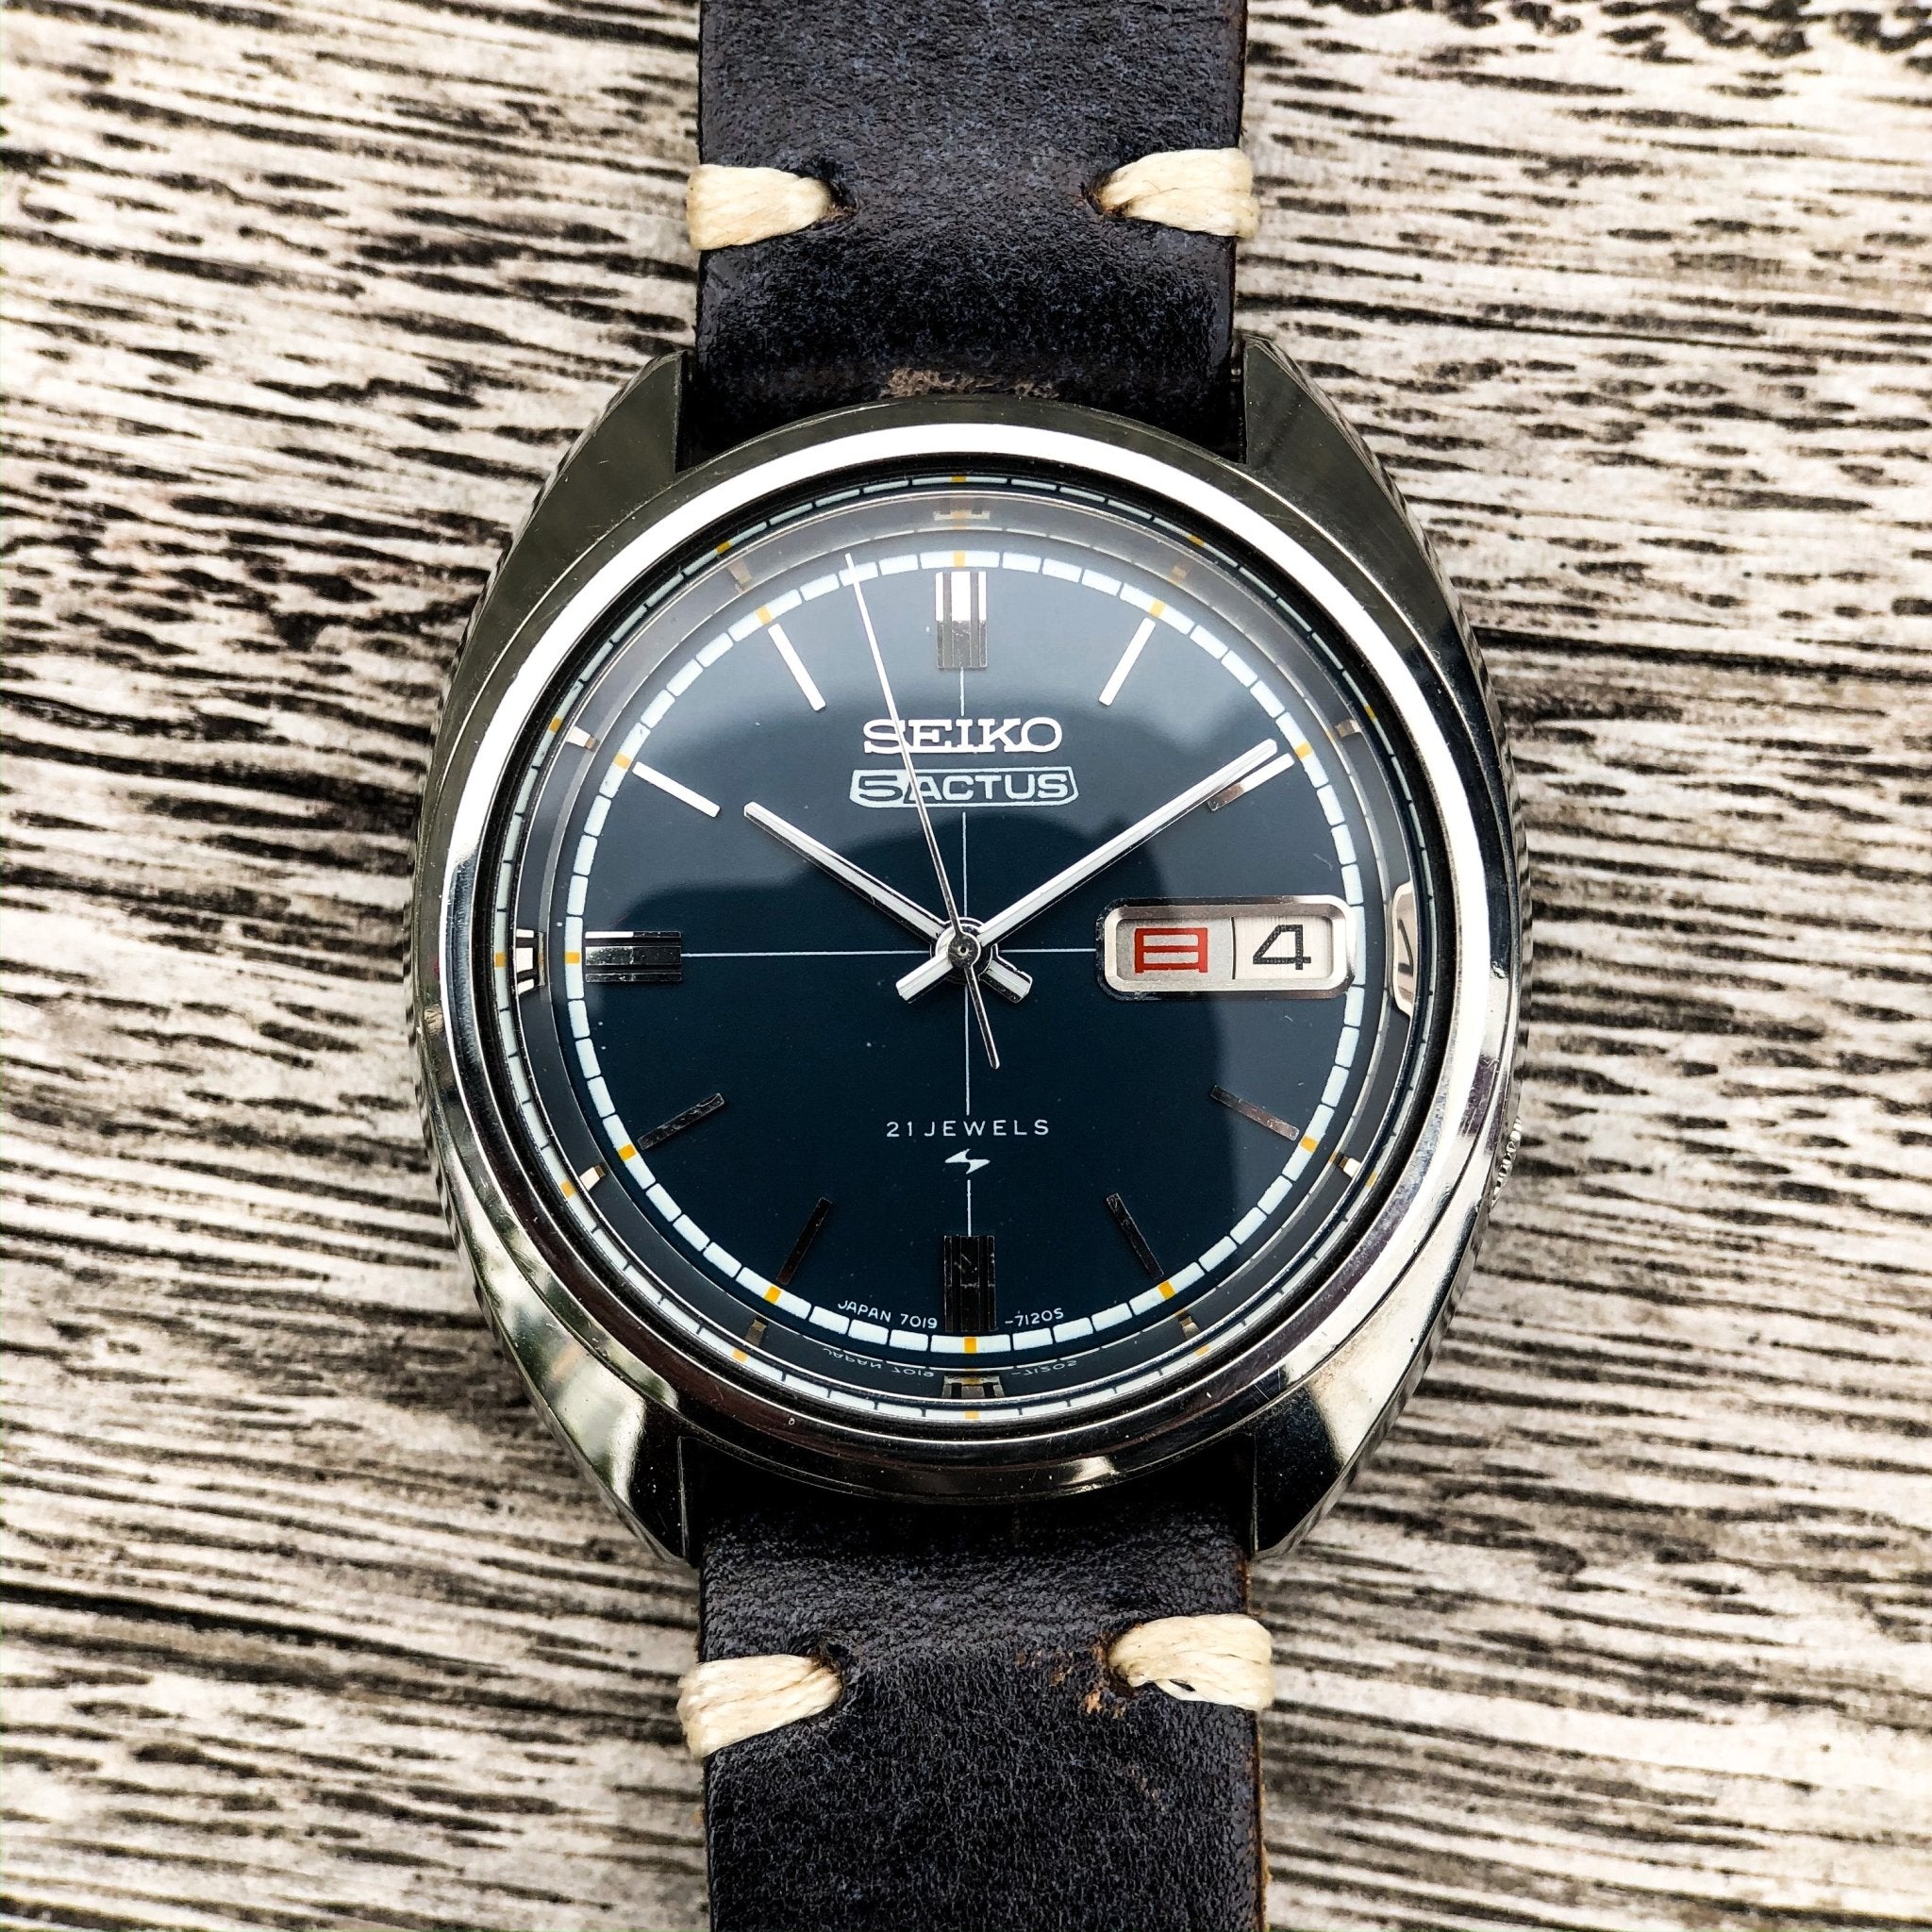 Vintage Watch | Seiko 5 Actus 7019 - 7120 - Samurai Vintage Co.